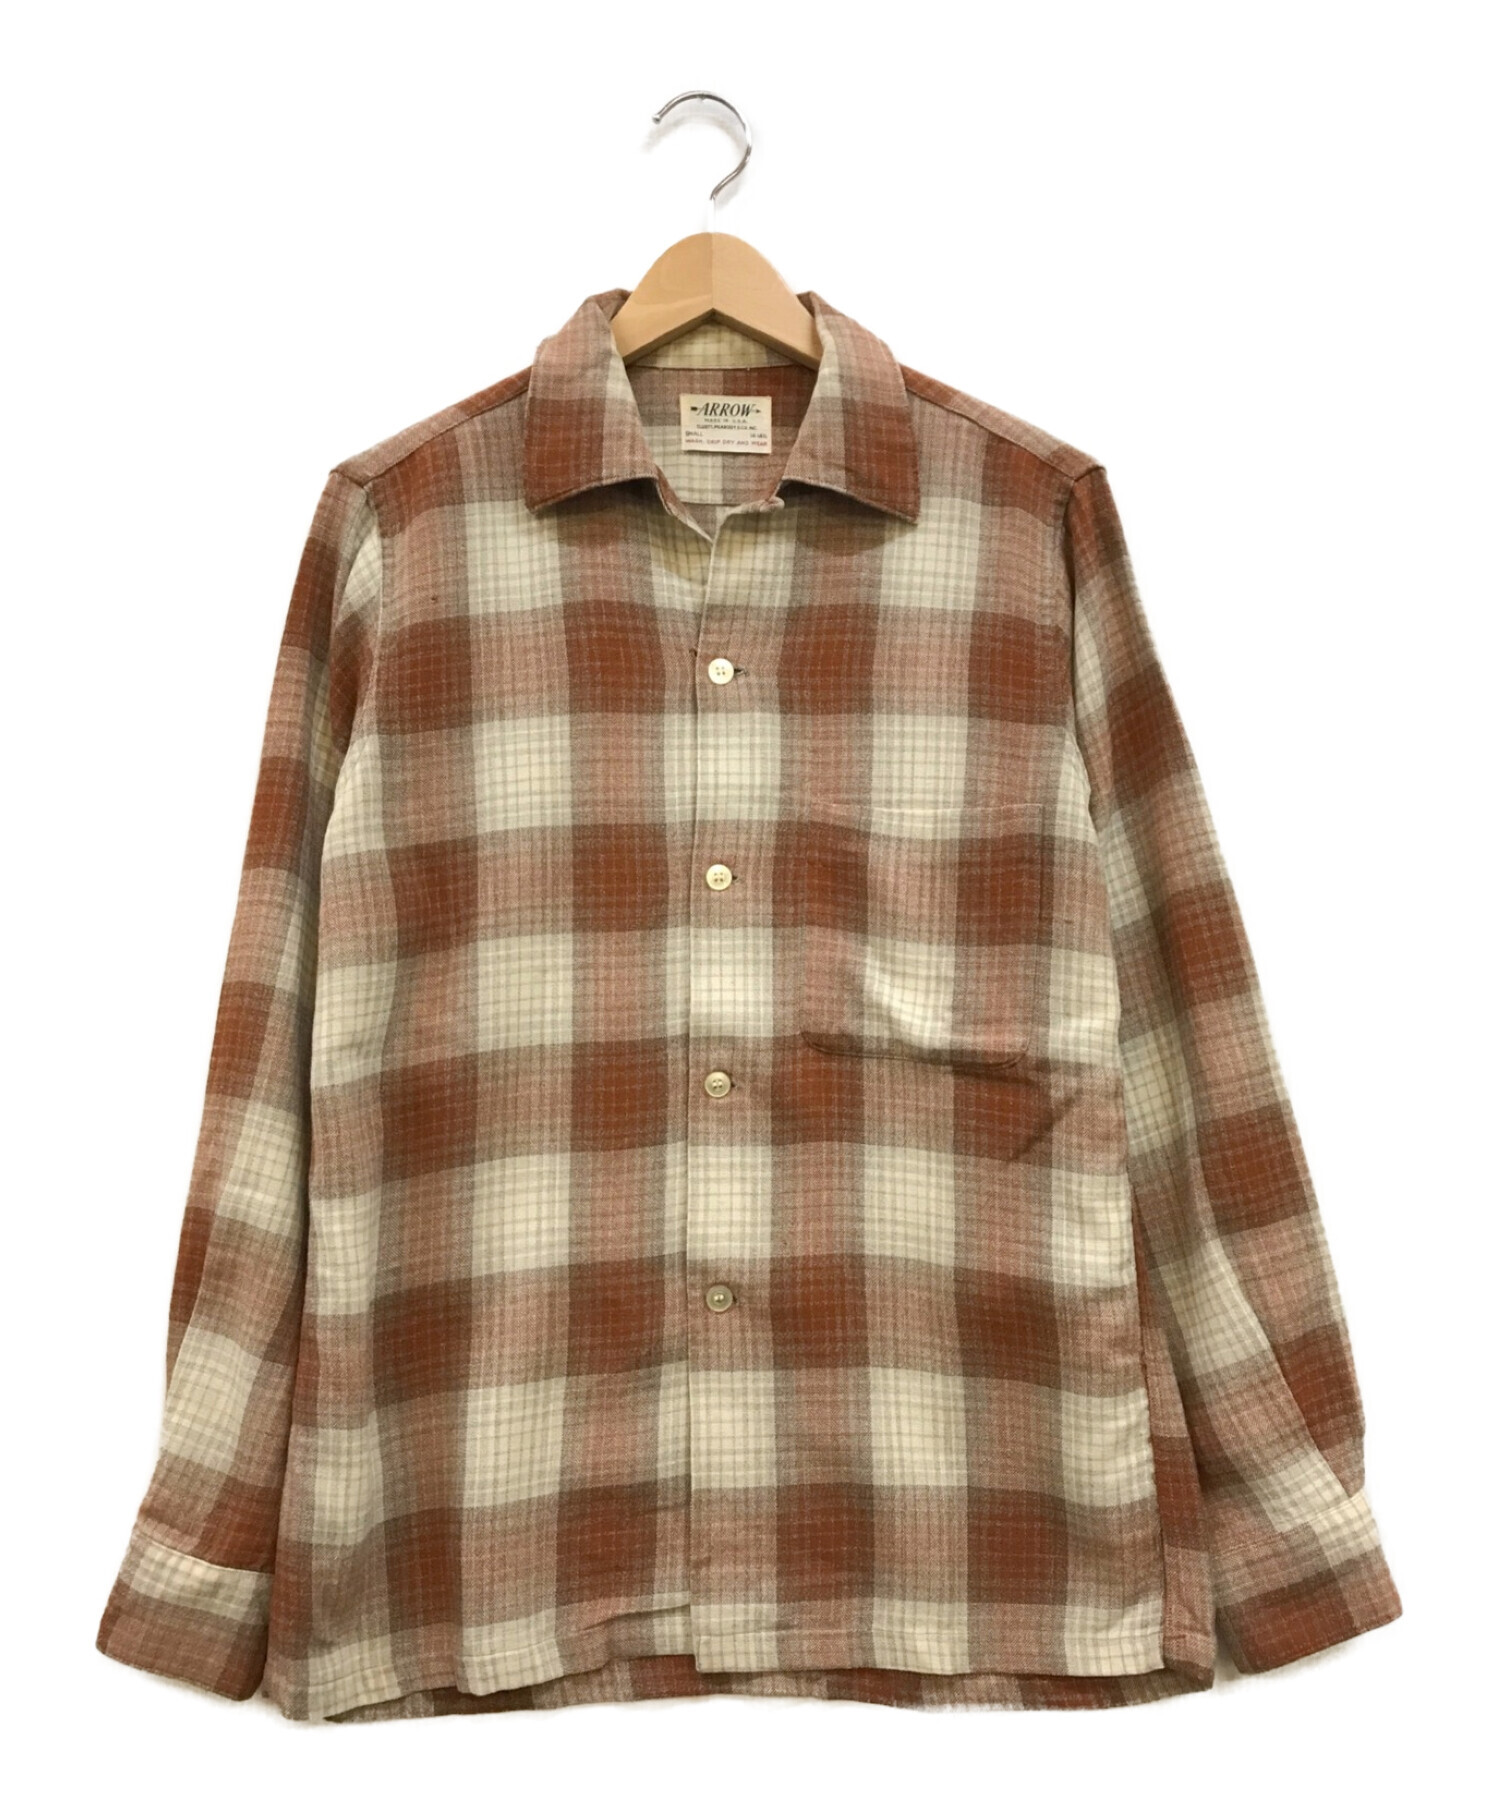 ARROW (アロー) [古着]60’S オープンカラーチェックウールシャツ ブラウン×ホワイト サイズ:S